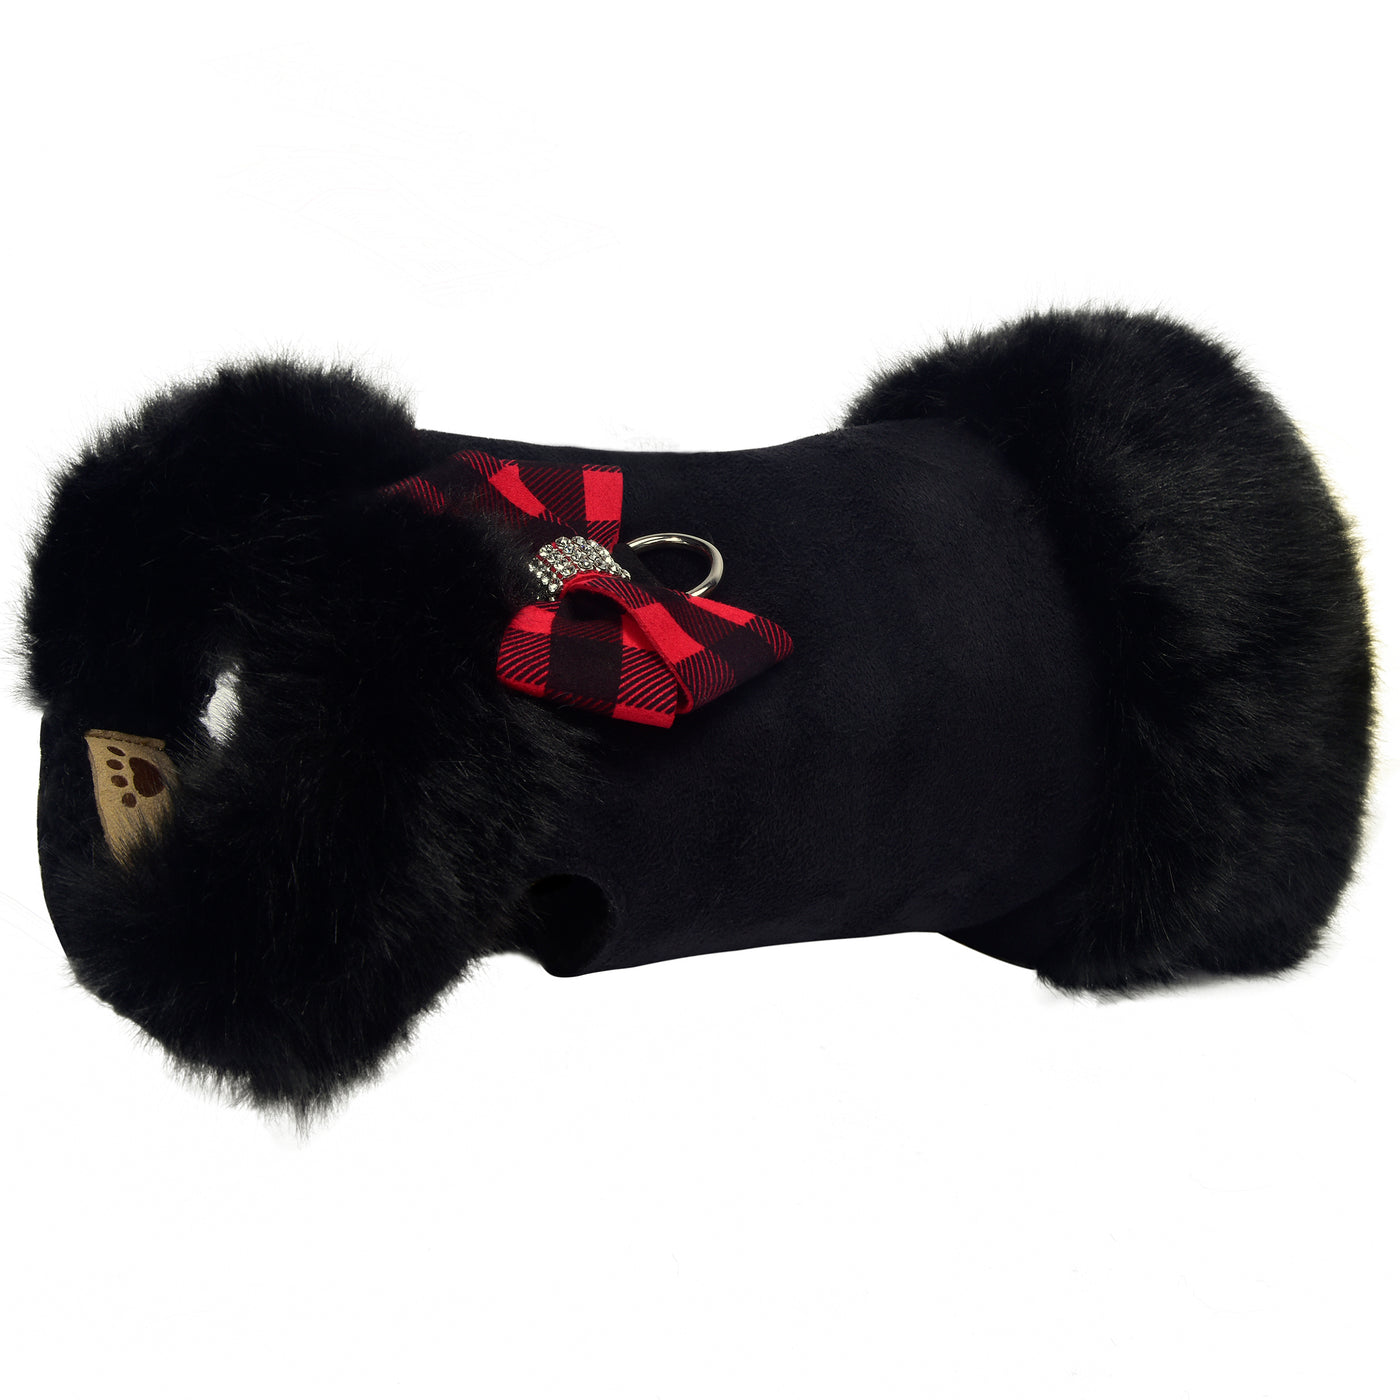 Red Gingham Nouveau Bow Black Faux Fox Fur Dog Coat